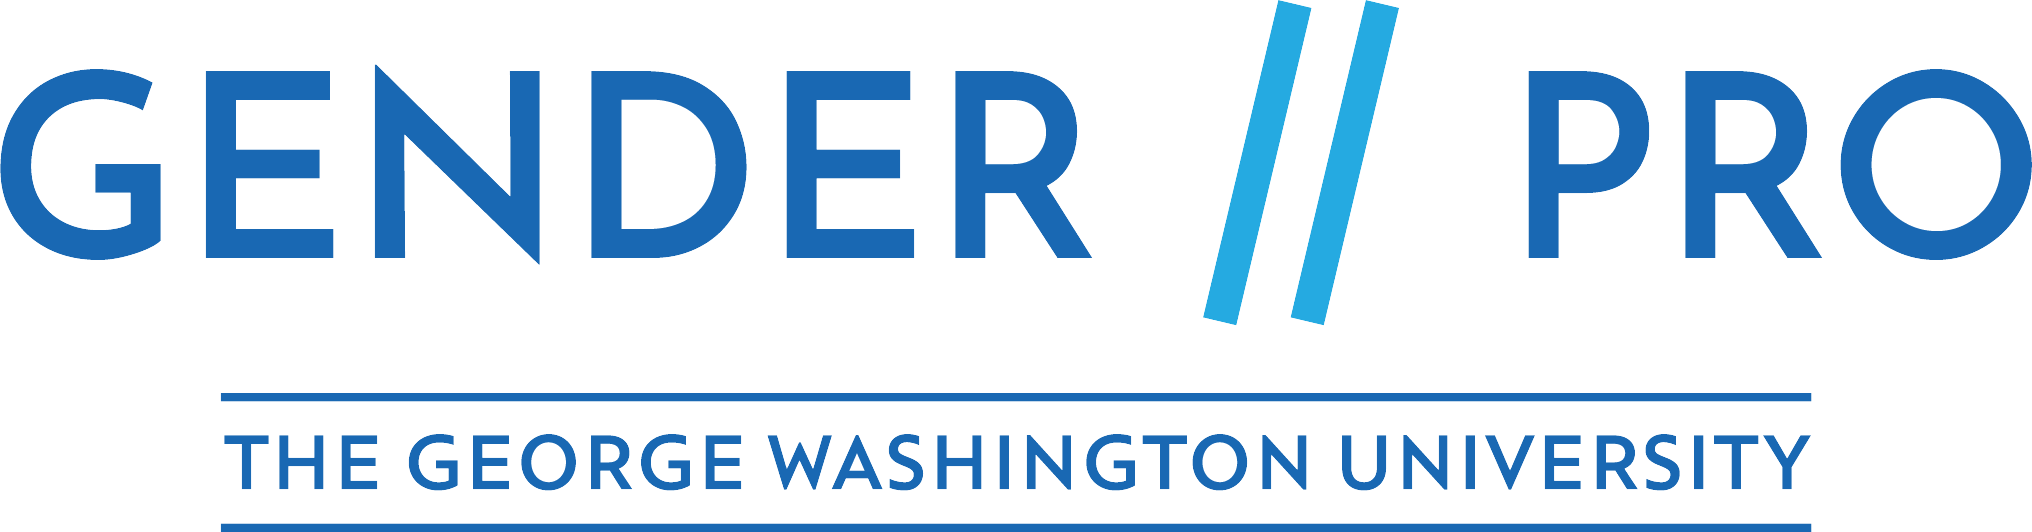 Gender Pro Logo The George Washington University